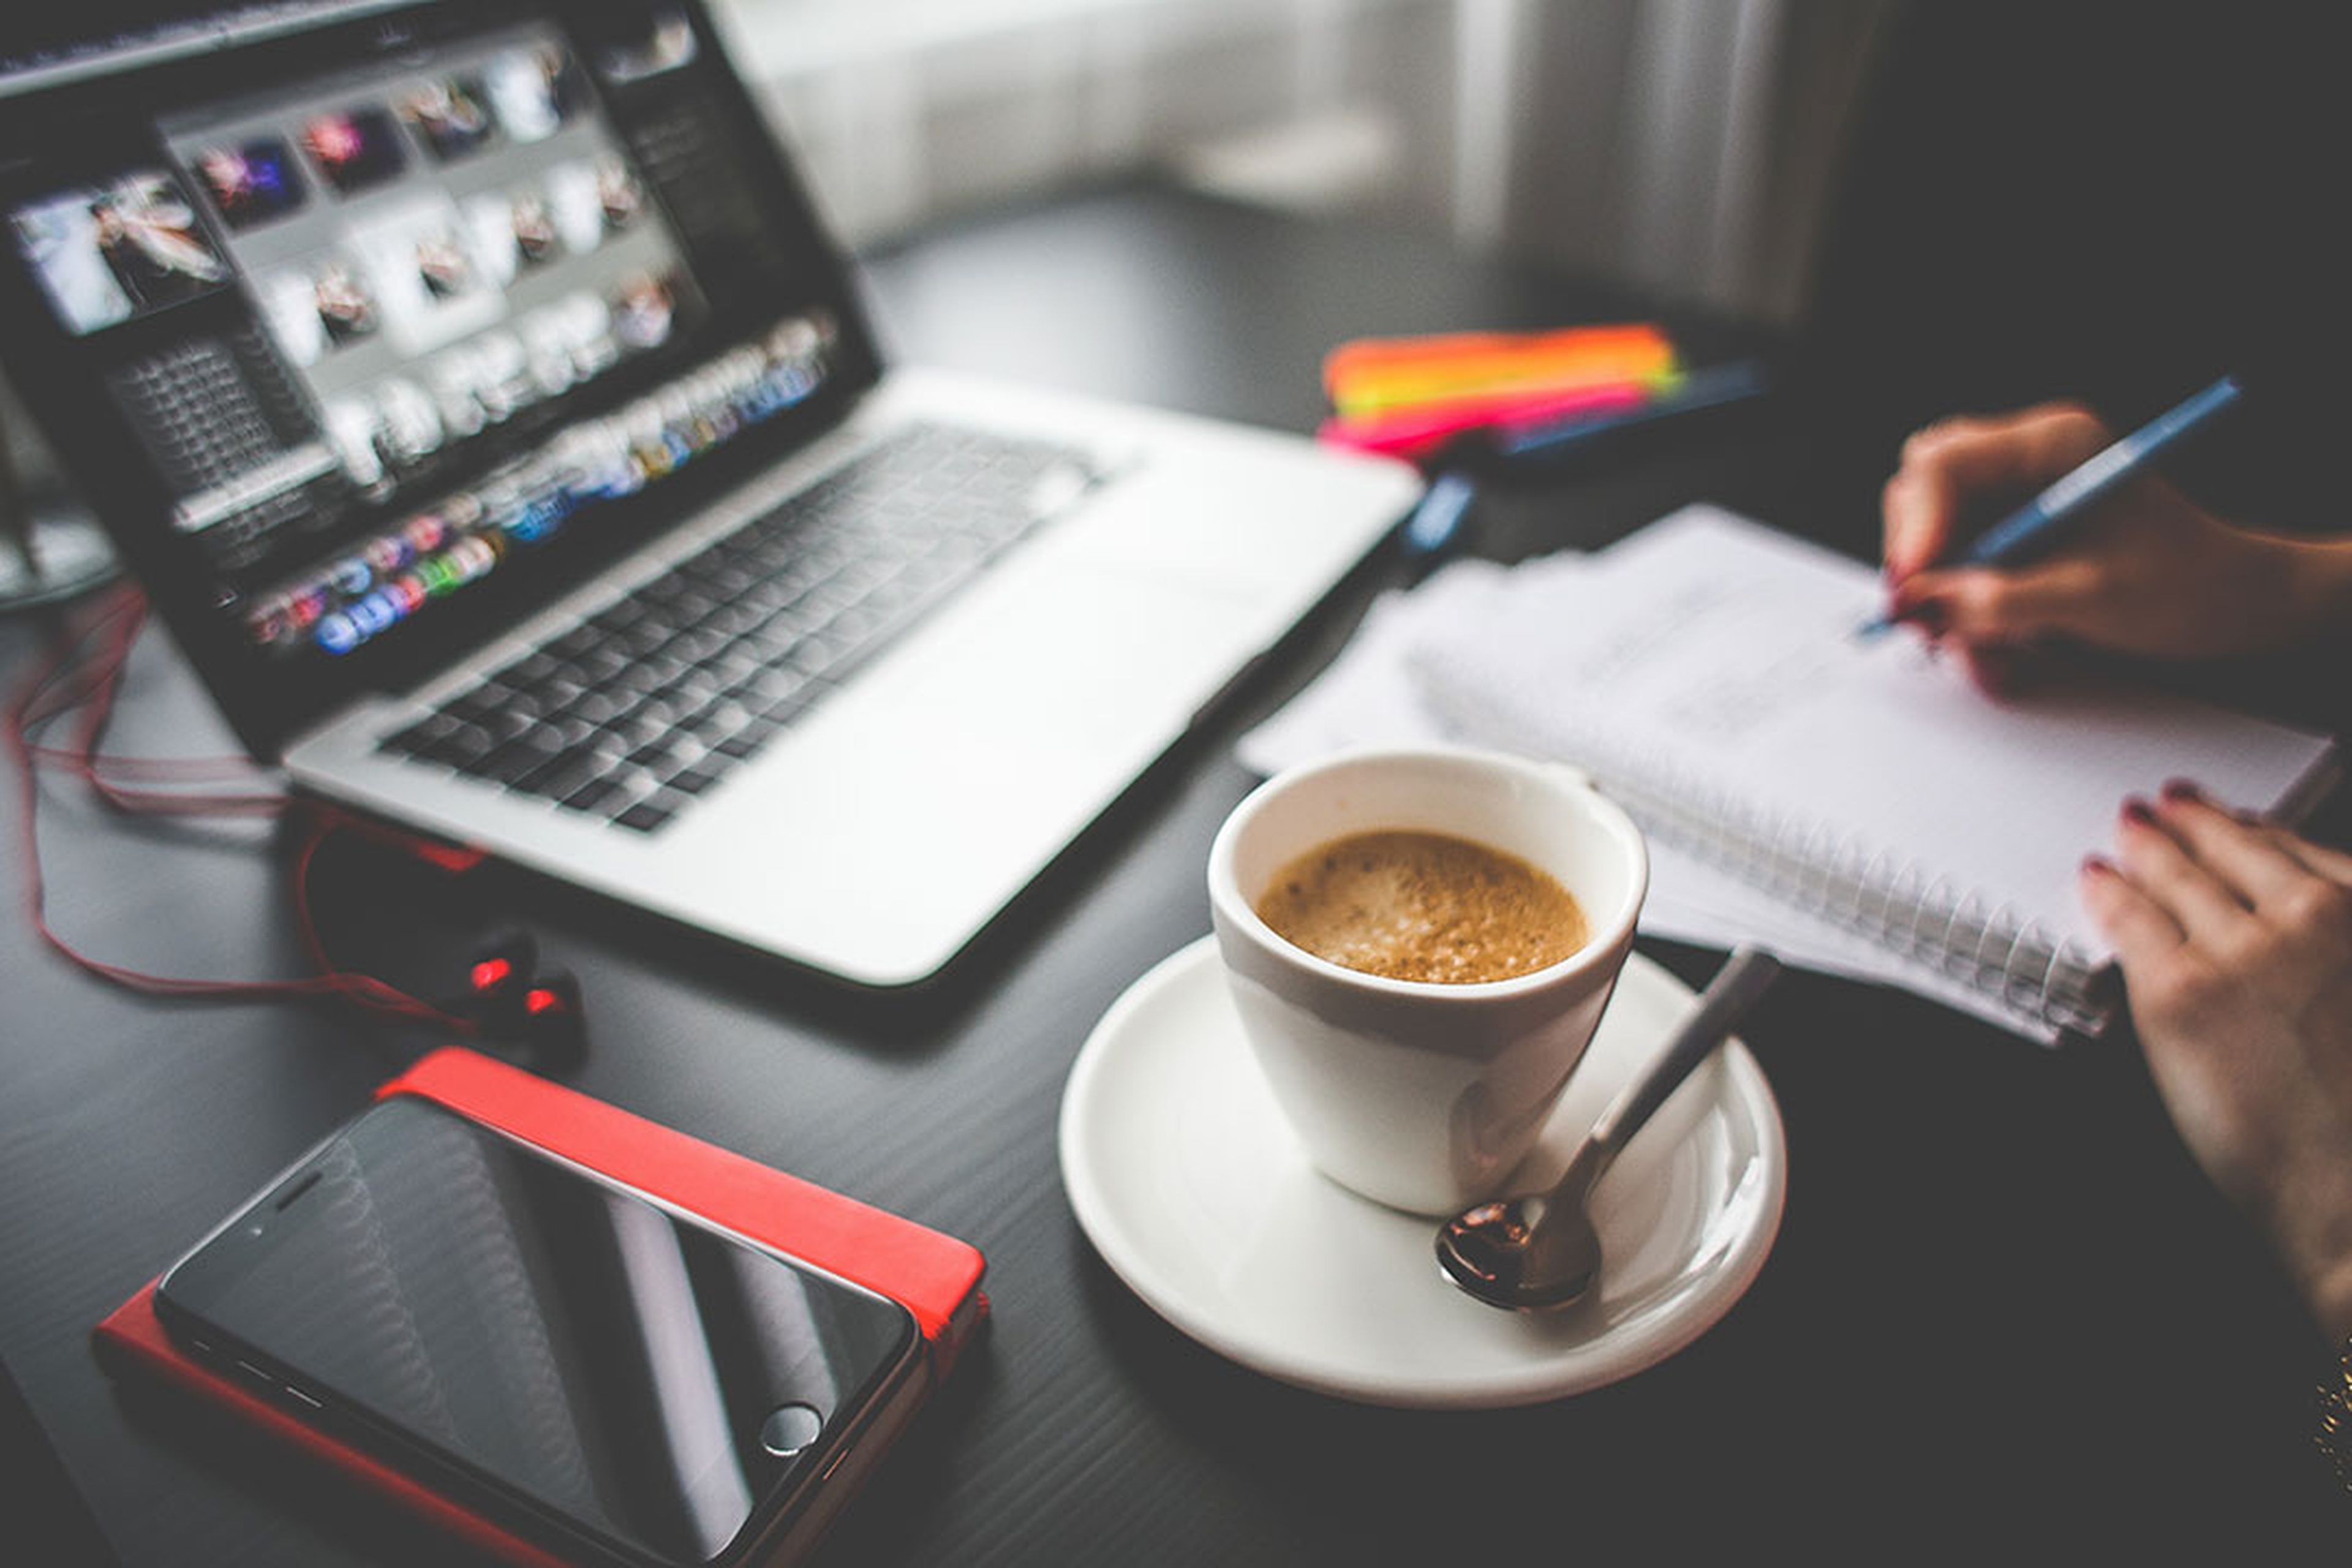 El café aumenta tu productividad en el trabajo, según un estudio | Computer  Hoy